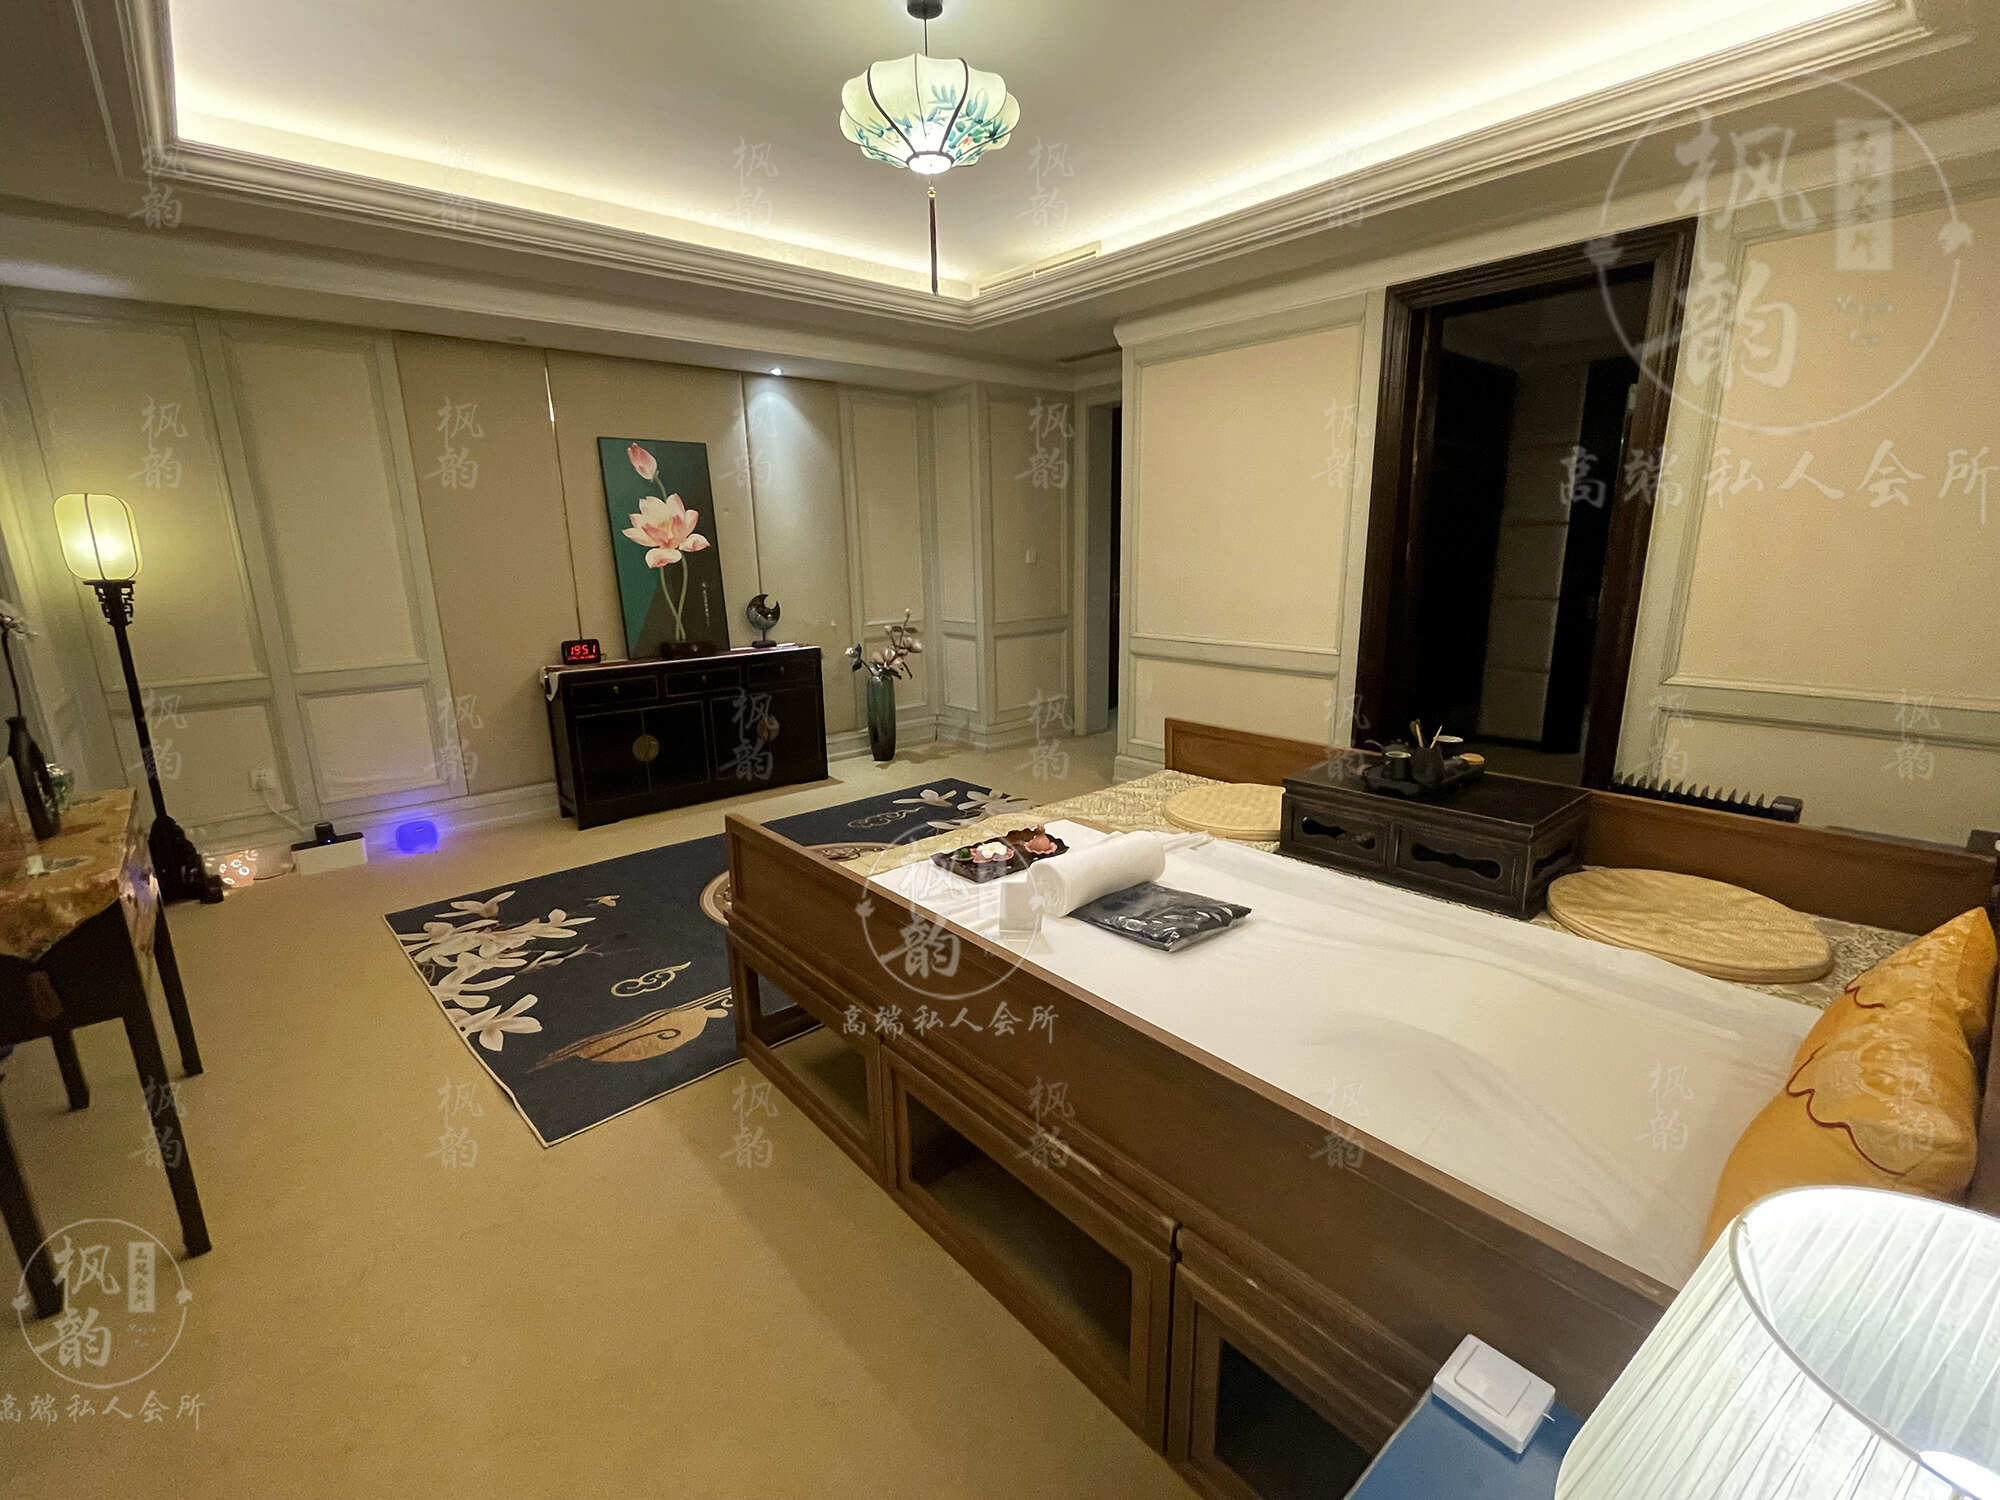 福州天津渔阳鼓楼人气优选沐足会馆房间也很干净，舒适的spa体验